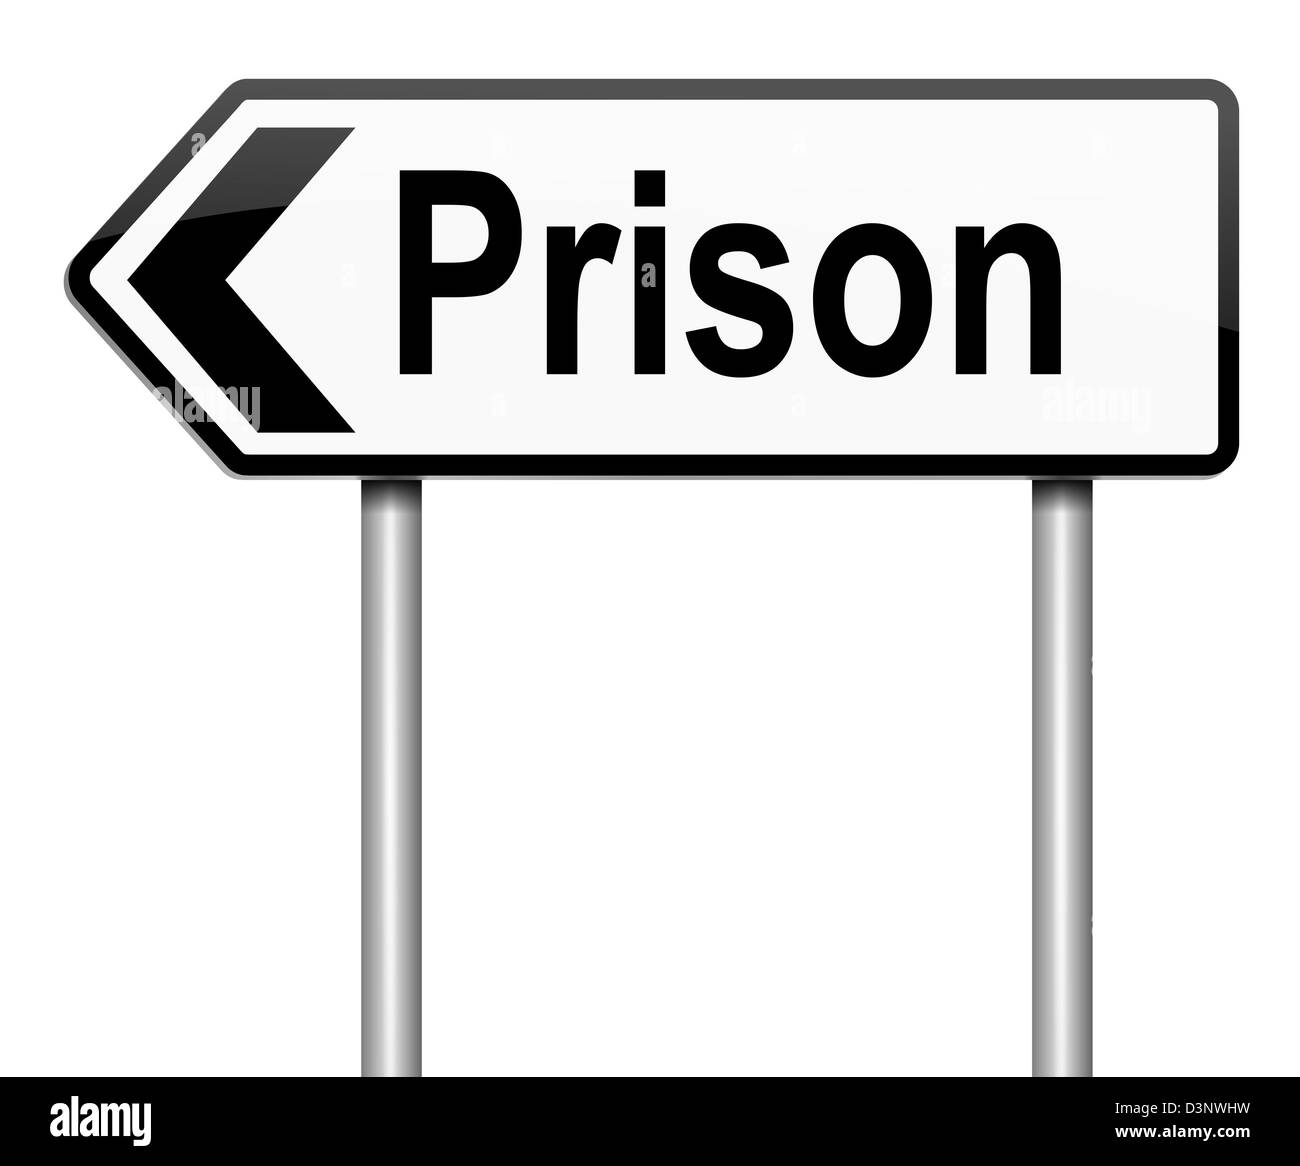 Prison concept. Stock Photo